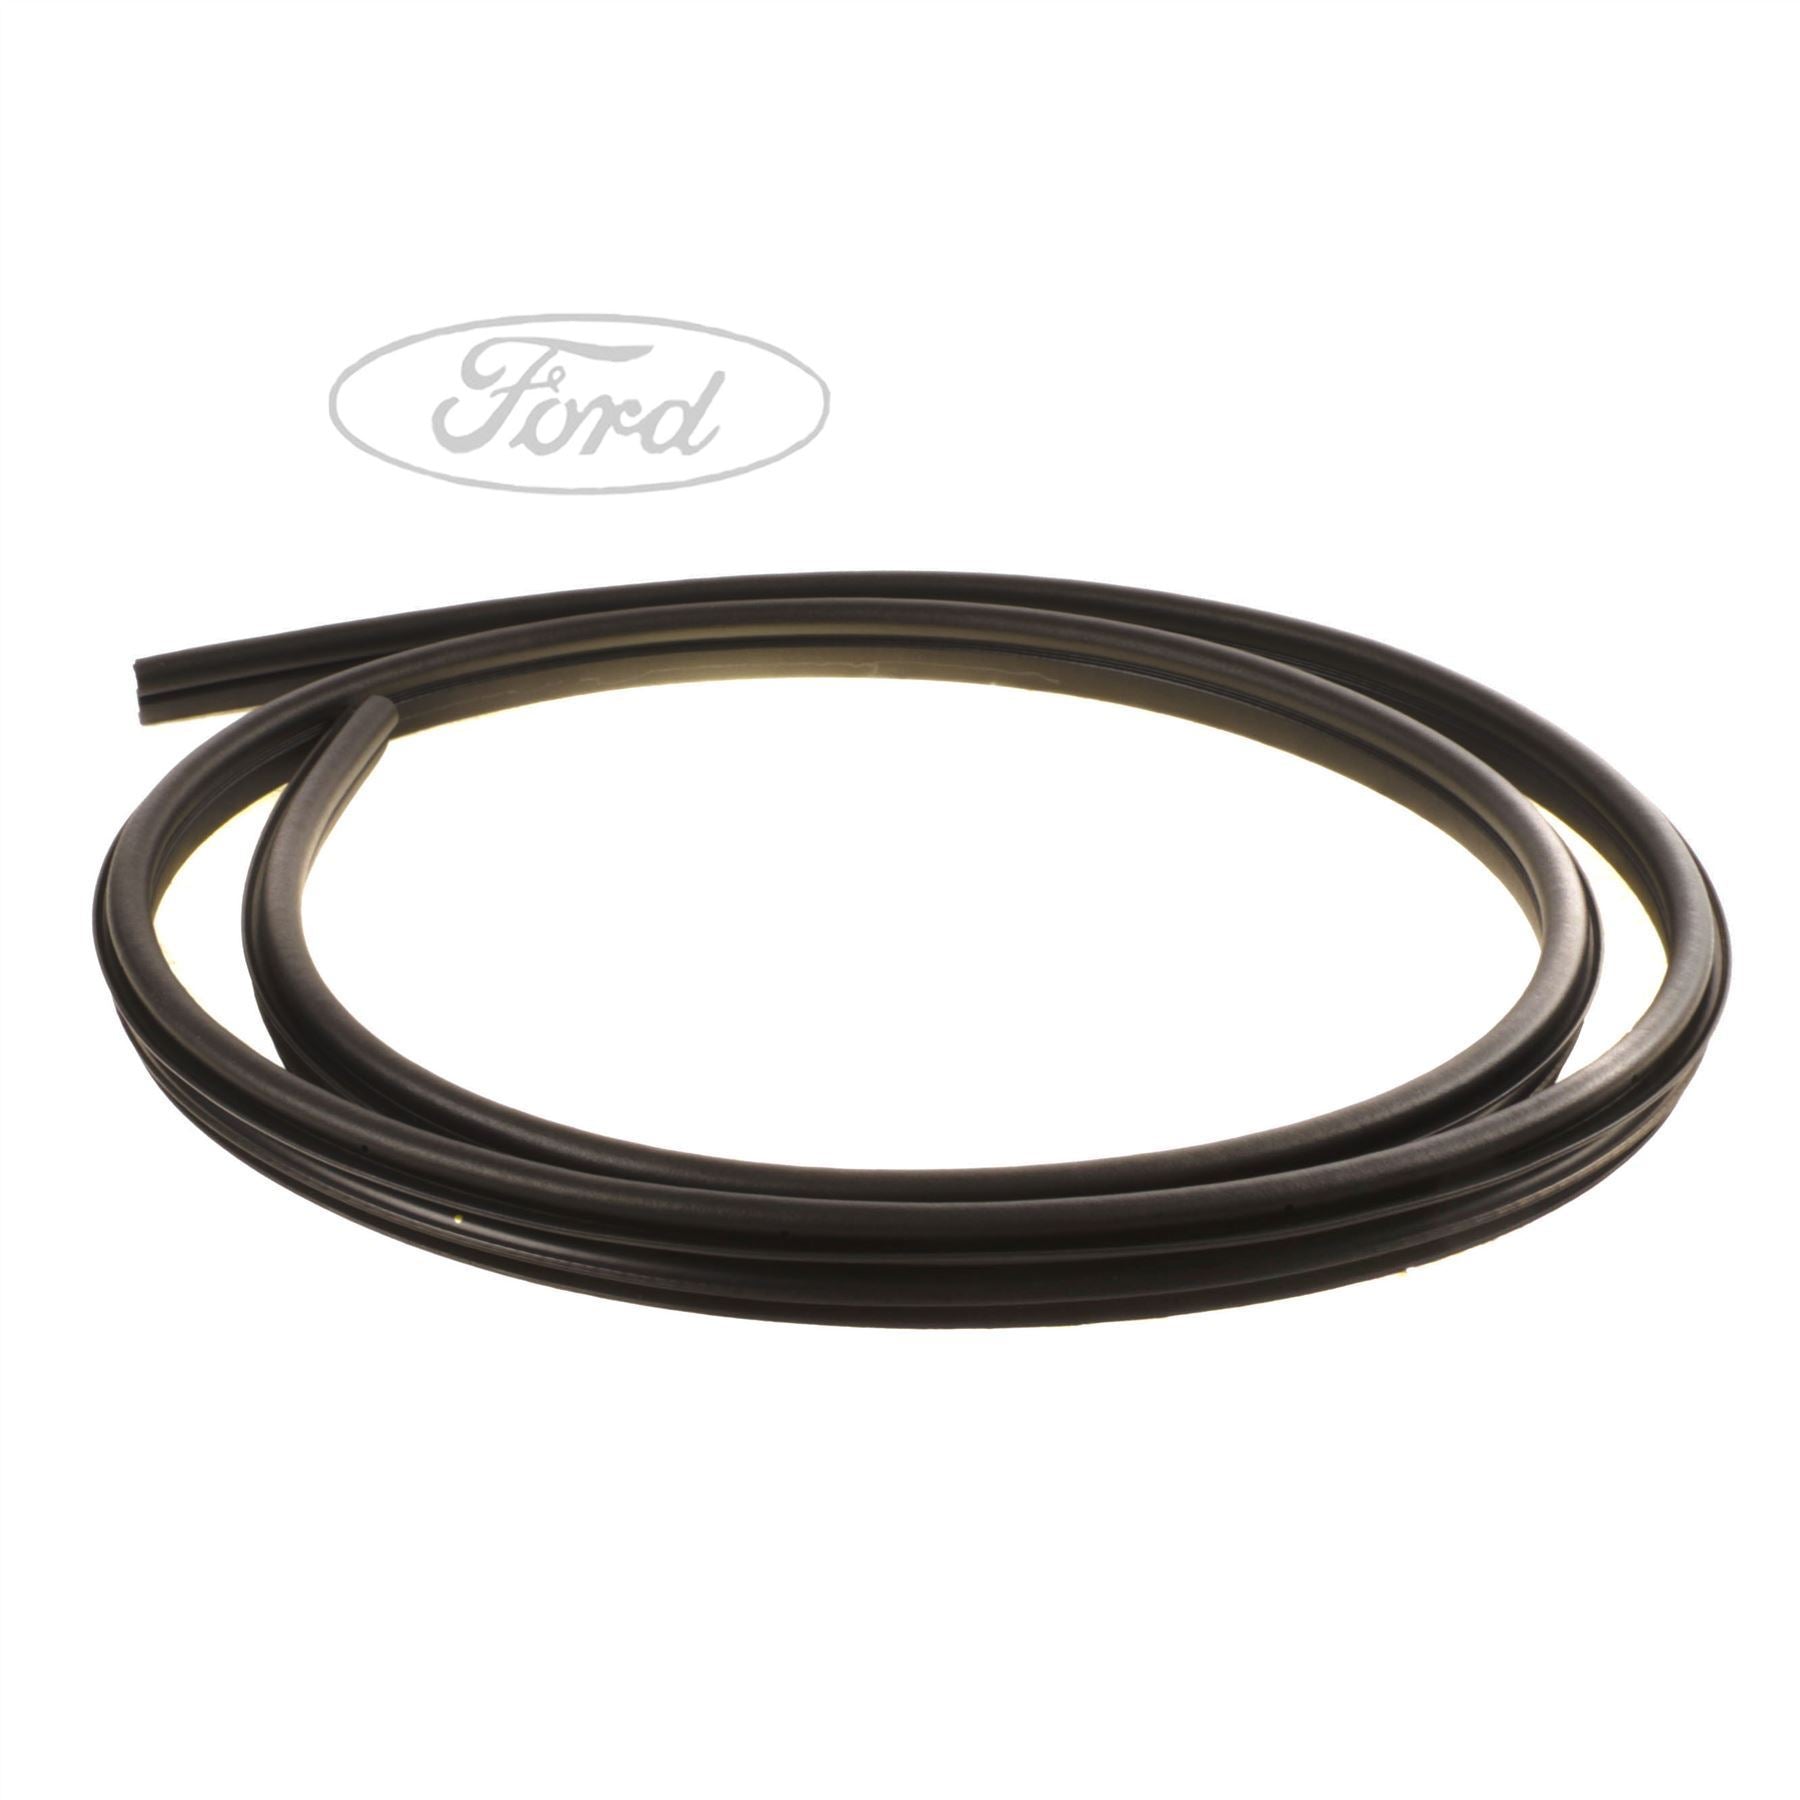 Für Ford Mondeo MK4/5 2013-2018 Innen Zentrale Steuerung Panel Tür Griff  5DCarbon Faser Aufkleber Decals auto styling Zubehör